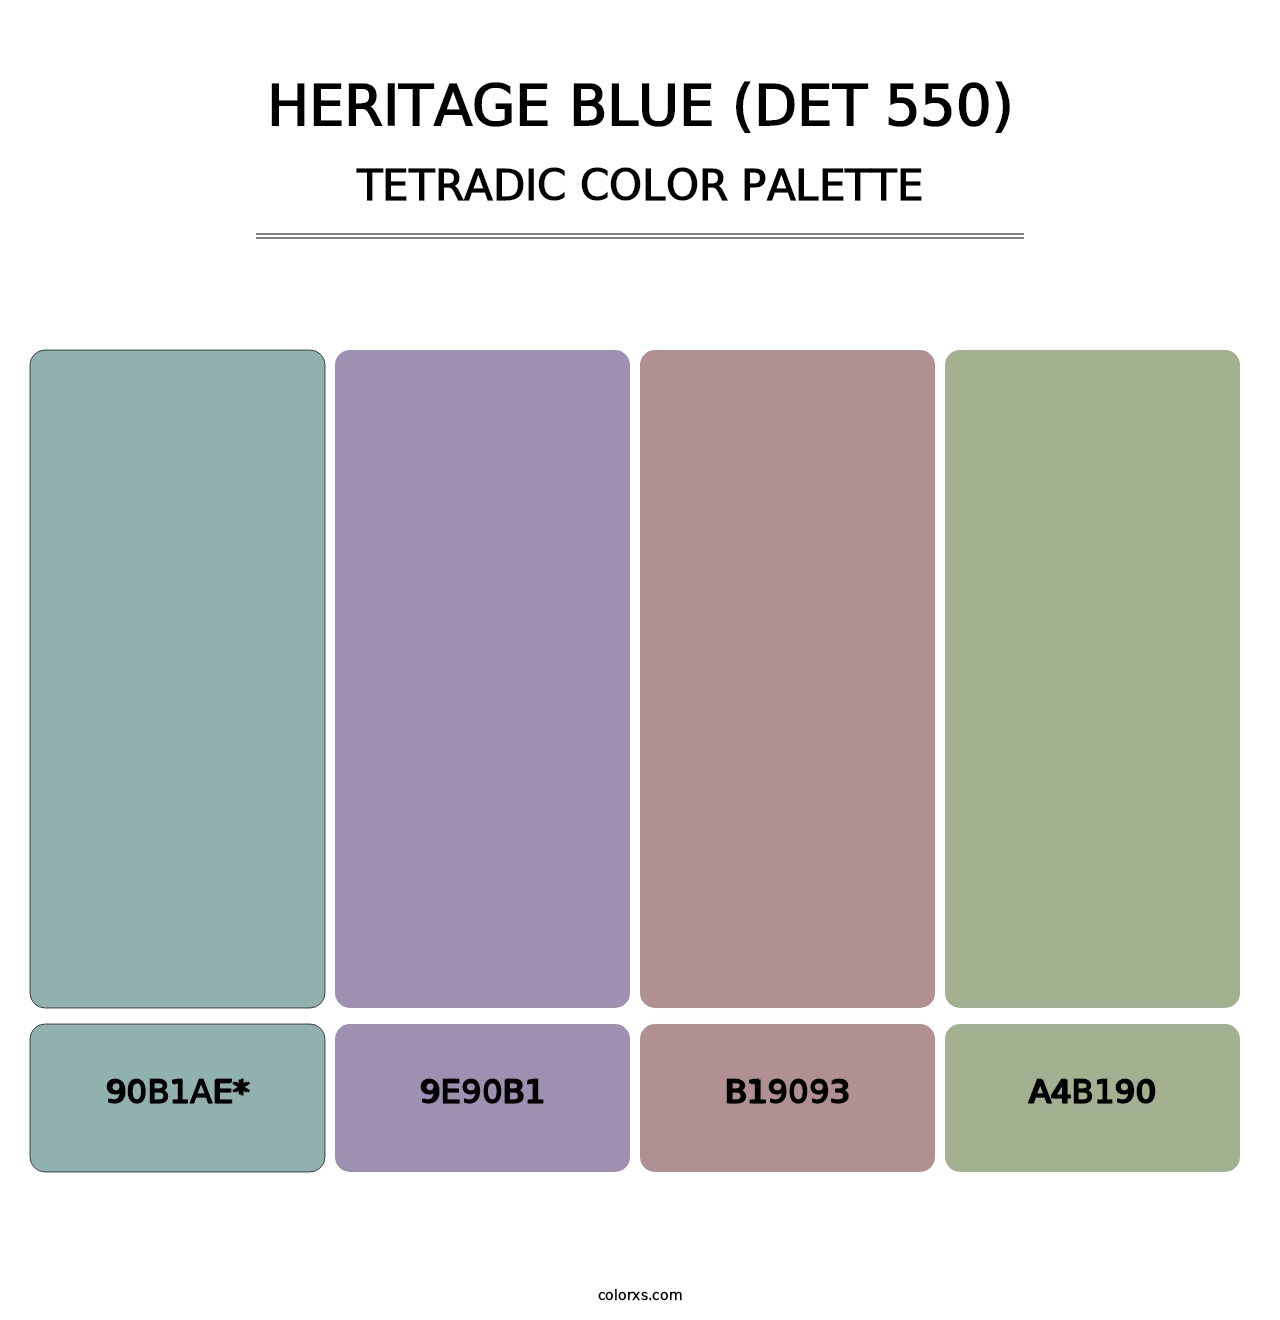 Heritage Blue (DET 550) - Tetradic Color Palette